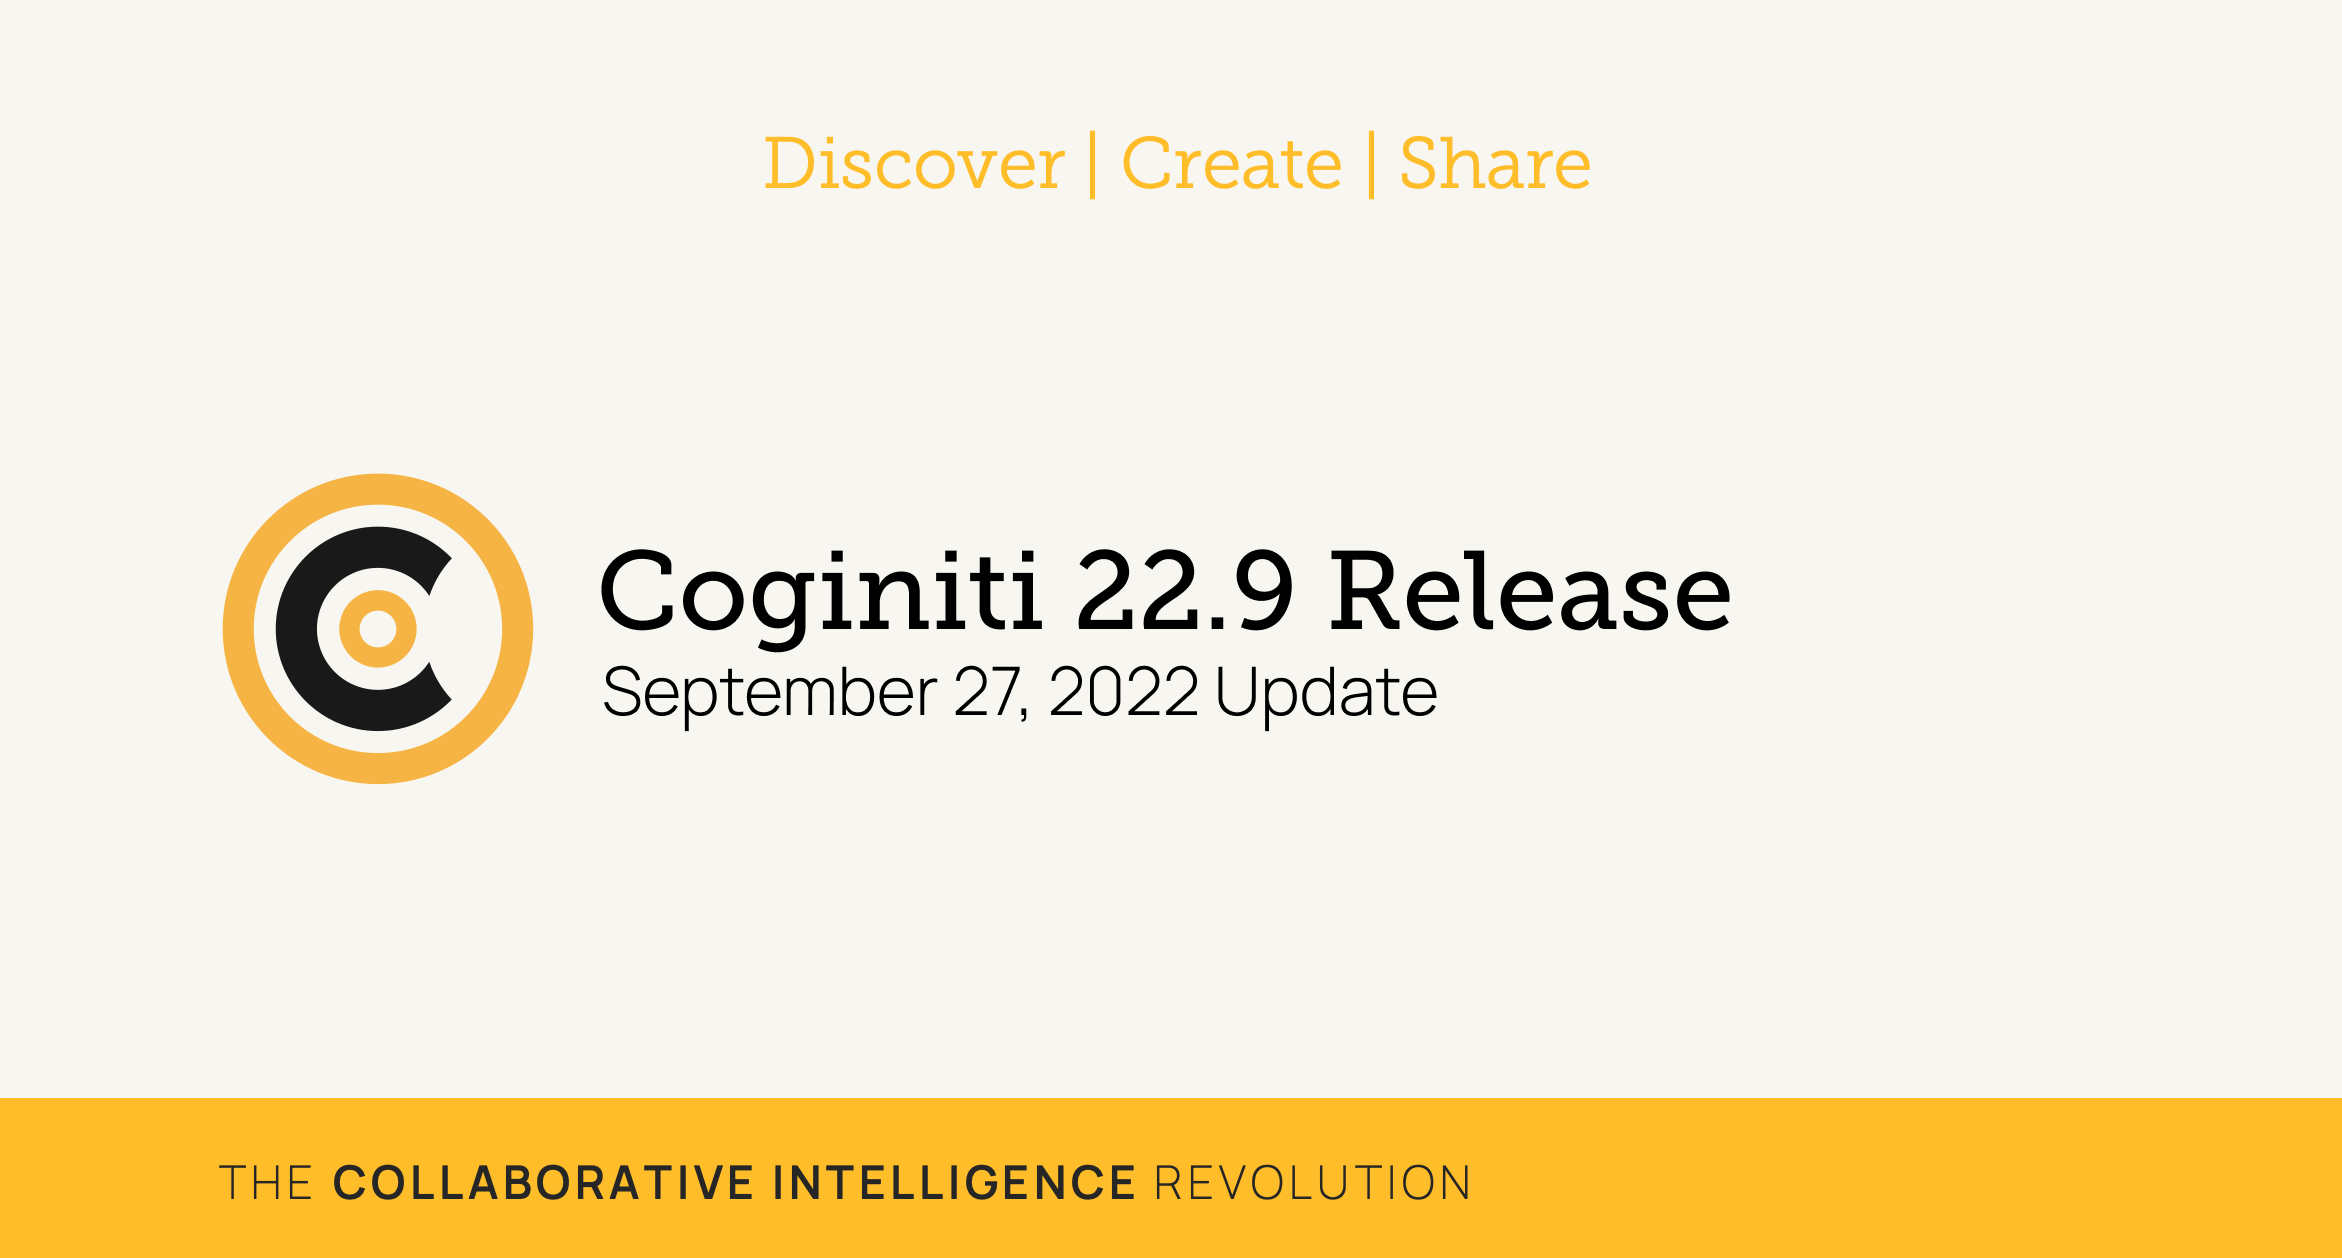 Coginiti 22.9 Release